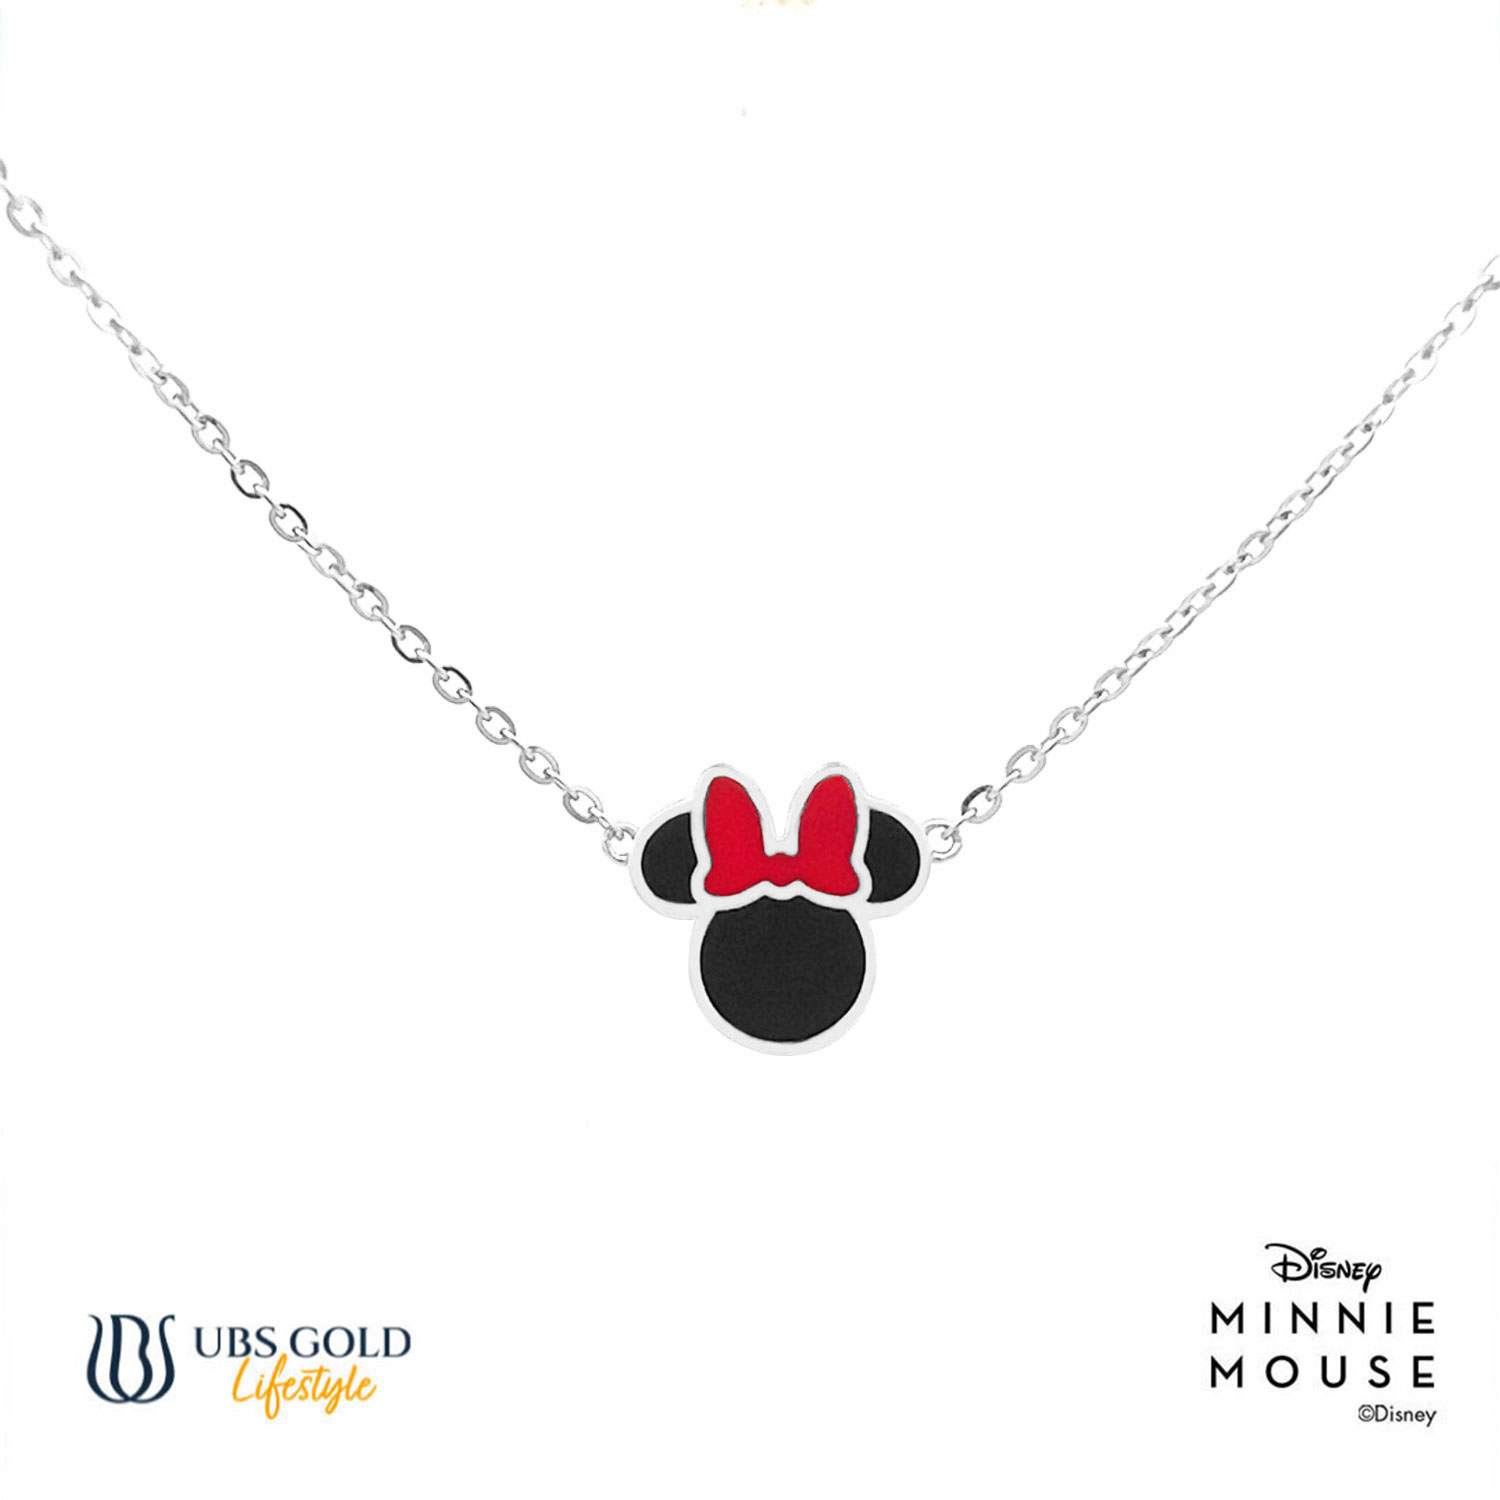 UBS Gold Kalung Emas Disney Minnie Mouse - Kky0480 - 17K